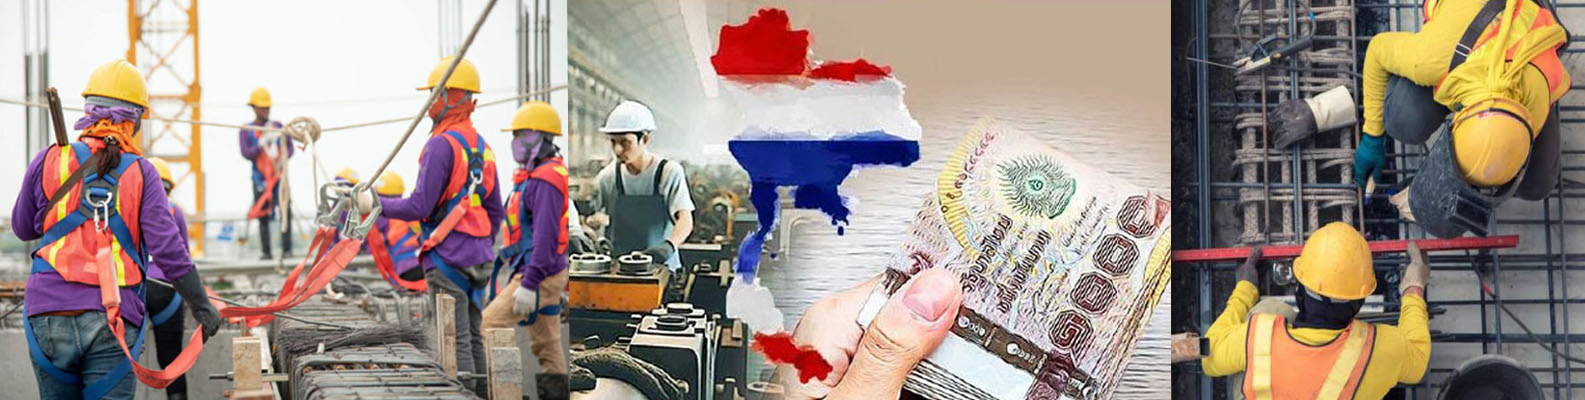 รัฐบาลประกาศขึ้นค่าแรงขั้นต่ำ 400 บาททั่วไทย มองเป็นผลได้หรือผลเสีย ?